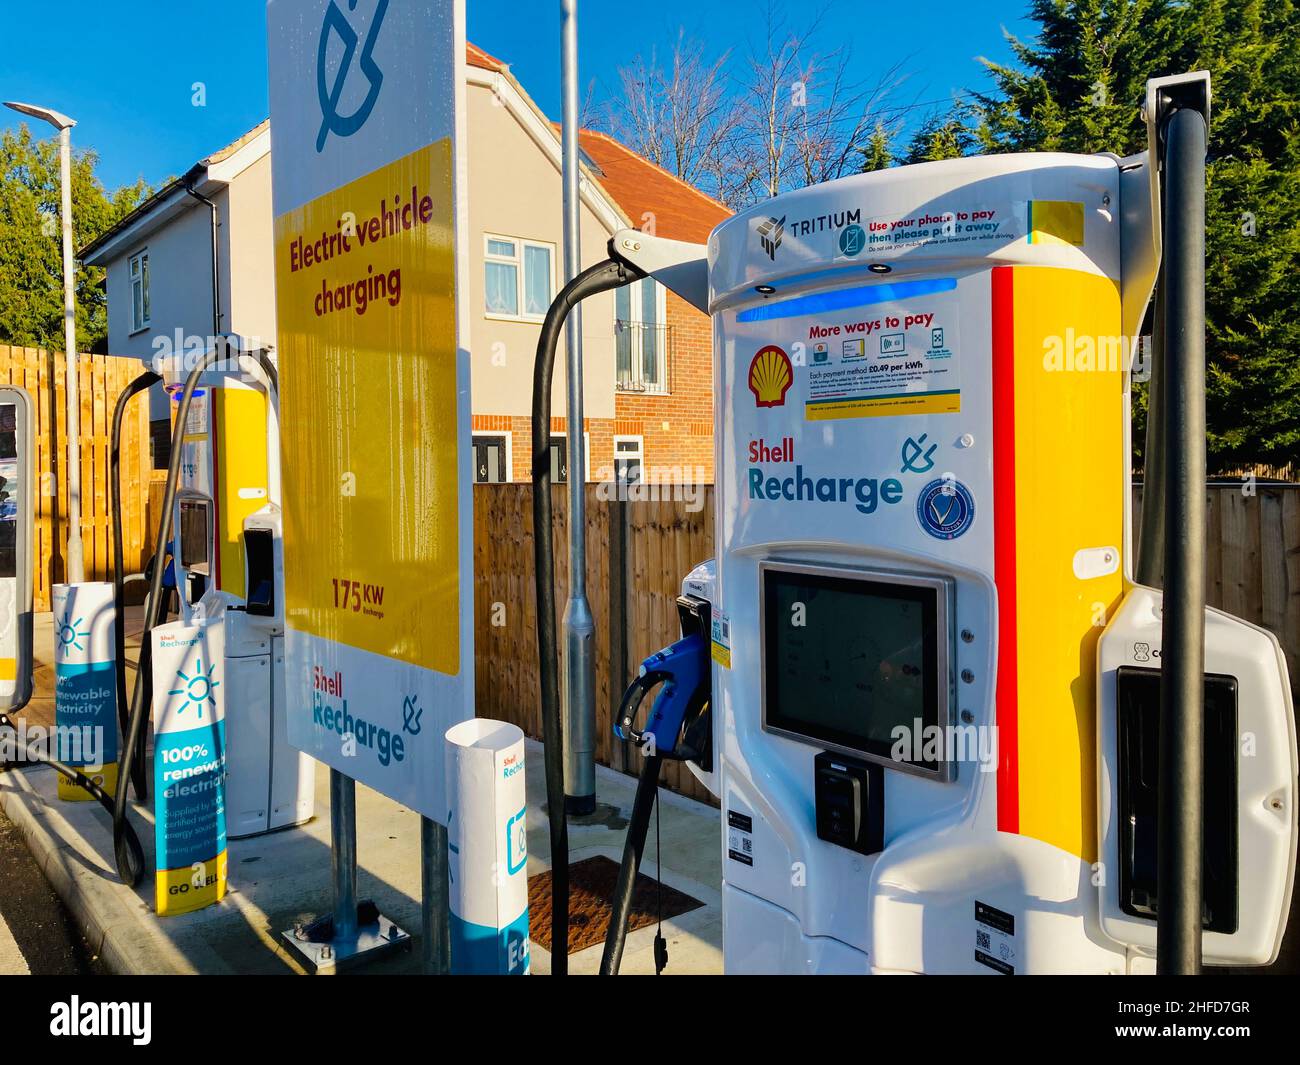 Station de charge Shell recharge pour véhicule électrique à Windsor,  Royaume-Uni.175kW charge rapide ultra-rapide EV pour les voitures  électriques Photo Stock - Alamy